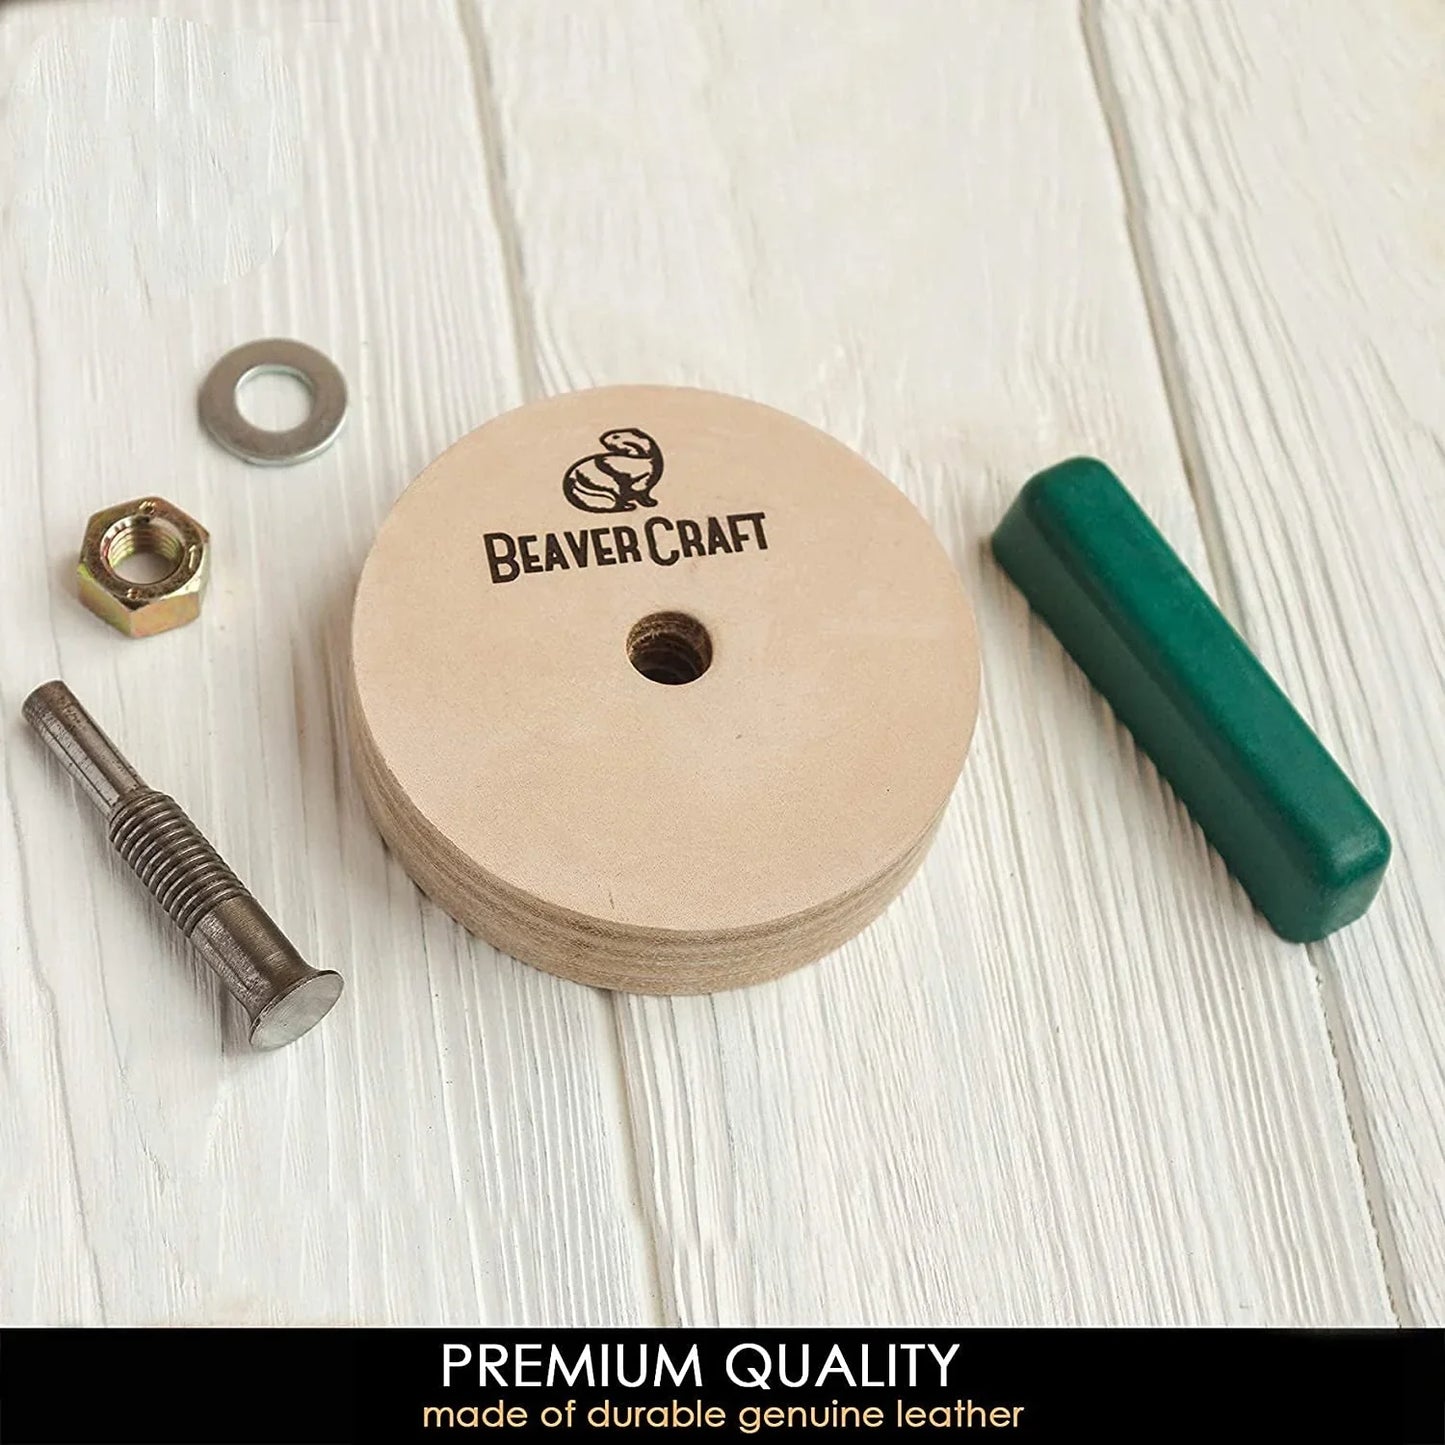 BeaverCraft PW1 Leather Honing Polishing Wheel For Polishing Compound